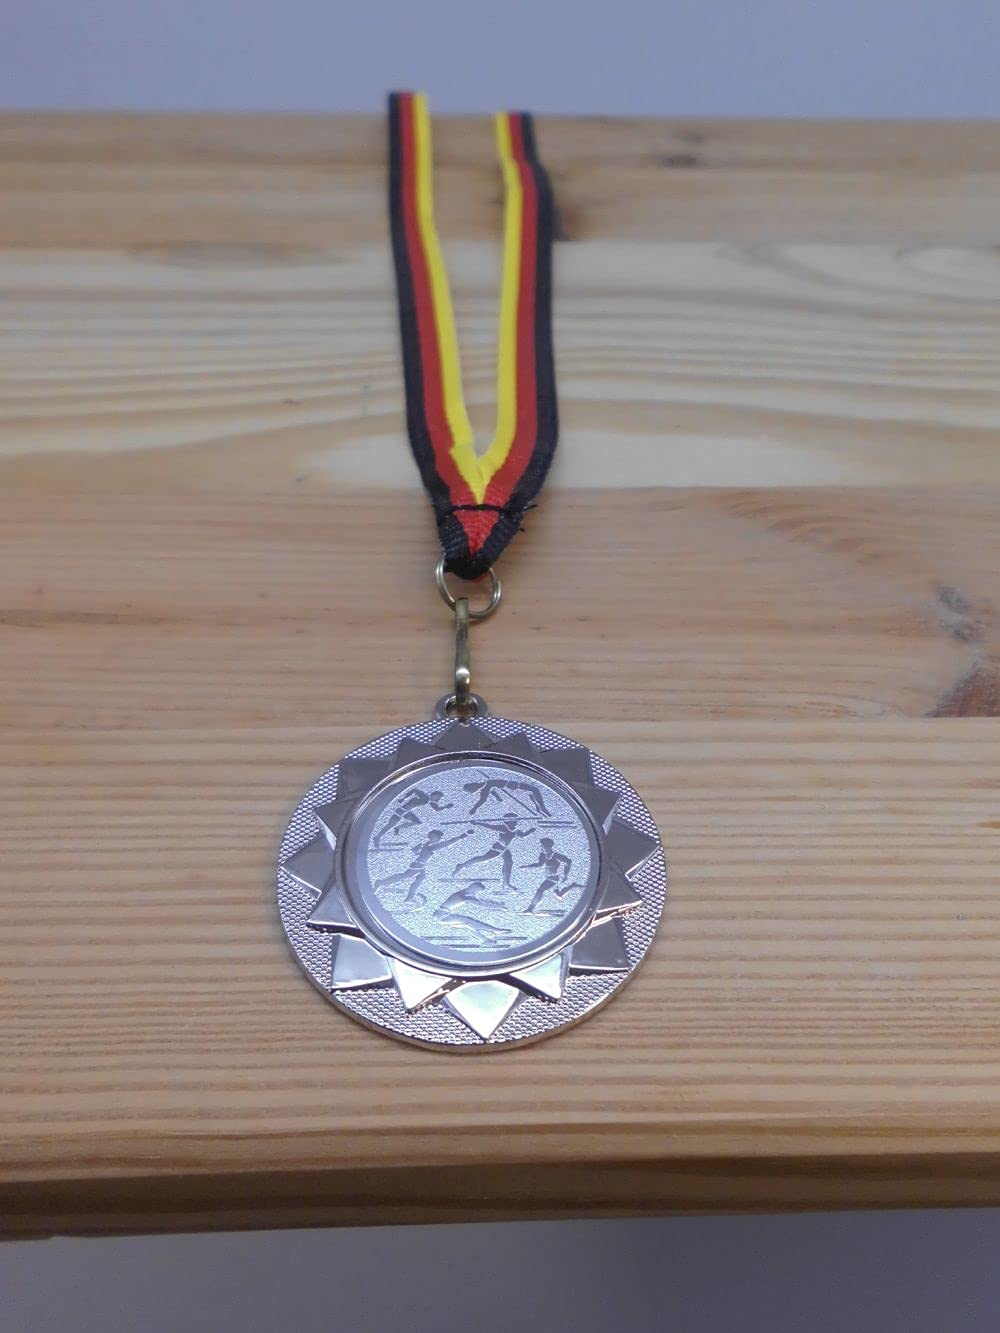 20 Stück Medaillen Leichtathletik aus Metall 40mm - mit einem Alu Emblem - inkl. Medaillen Band - Farbe: Silber - mit Alu Emblem 25mm - Turnier - (e104)